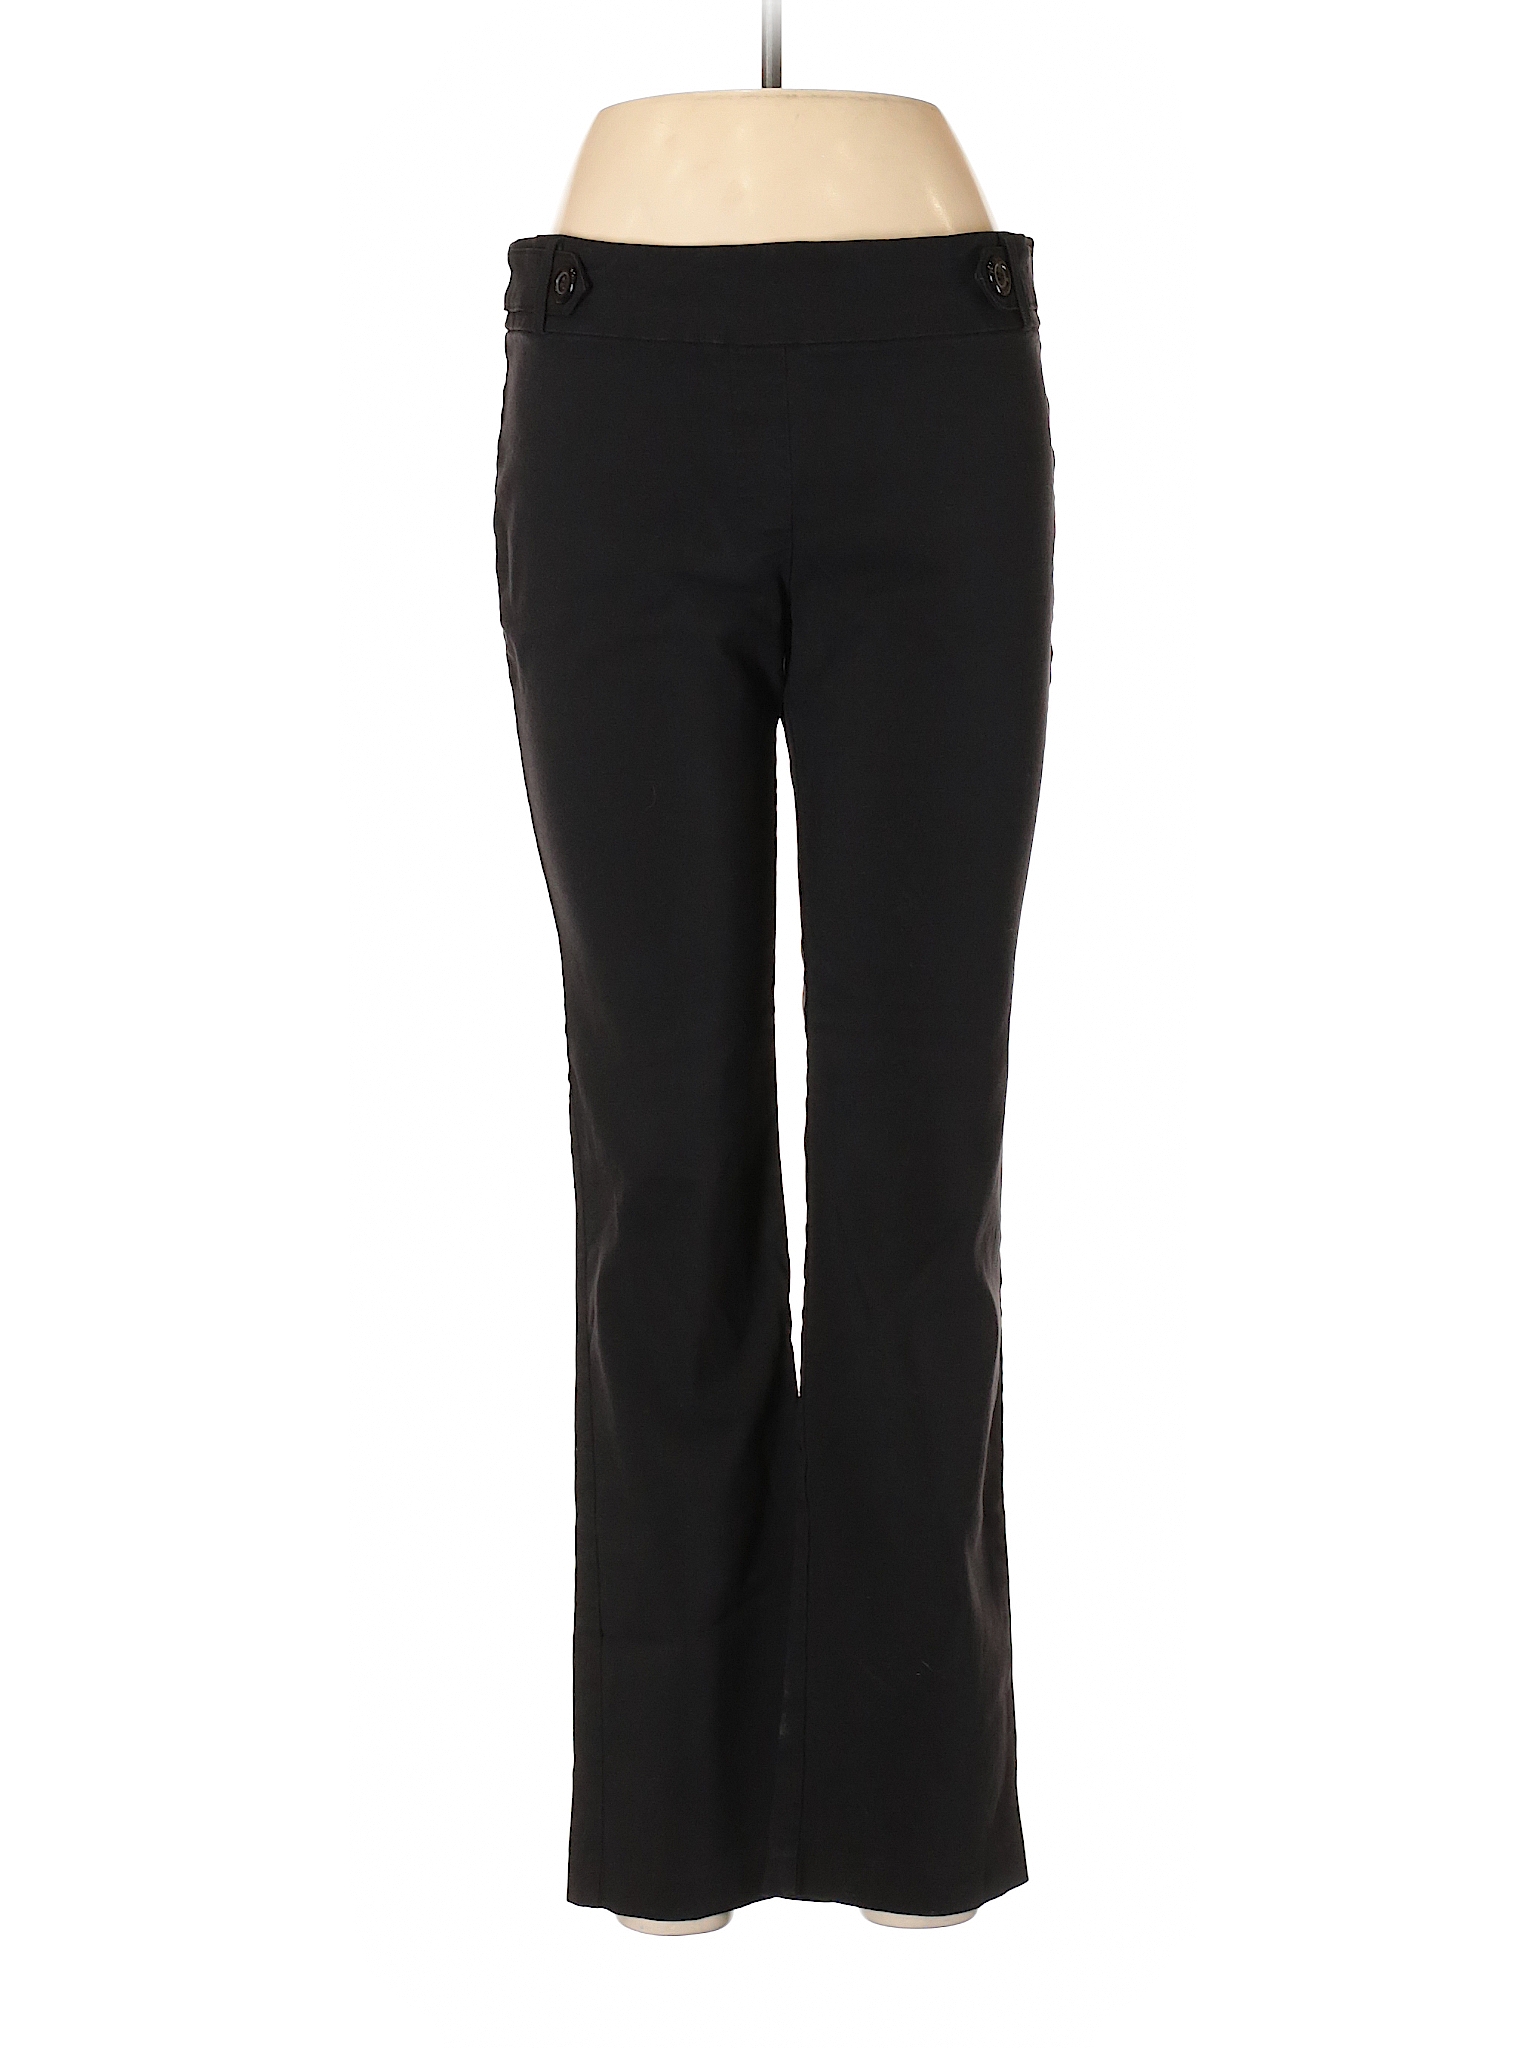 Soho Apparel Ltd Solid Black Casual Pants Size L 72 Off Thredup